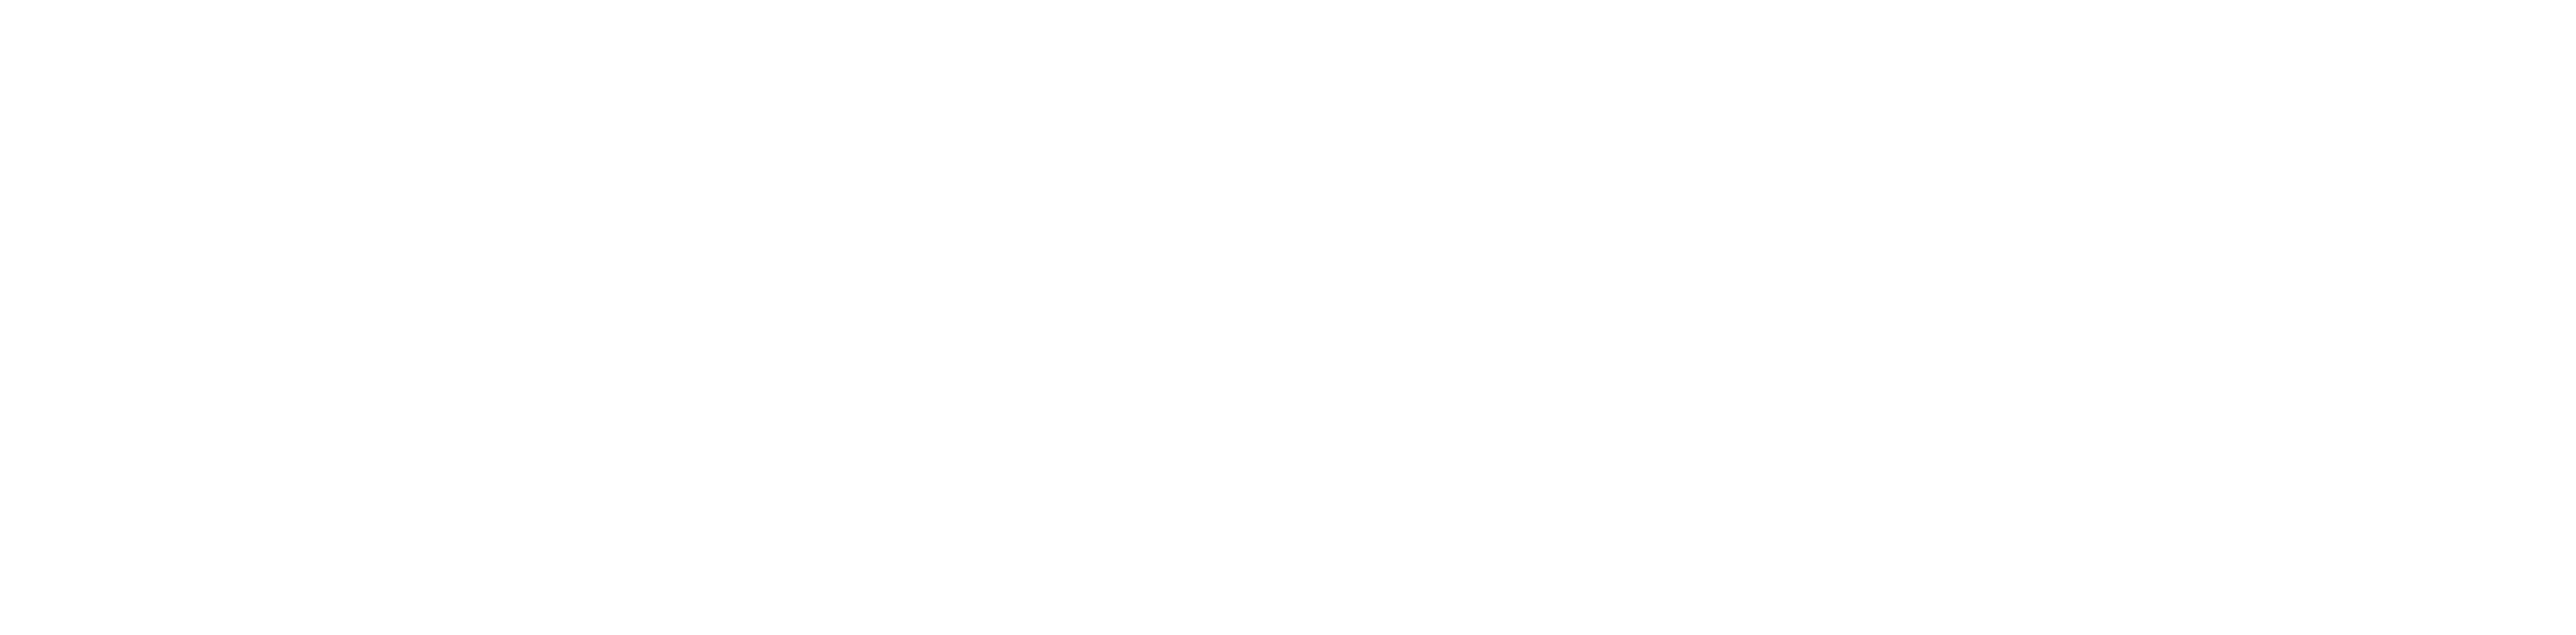 Under the Helmet: The Legacy of Boba Fett logo